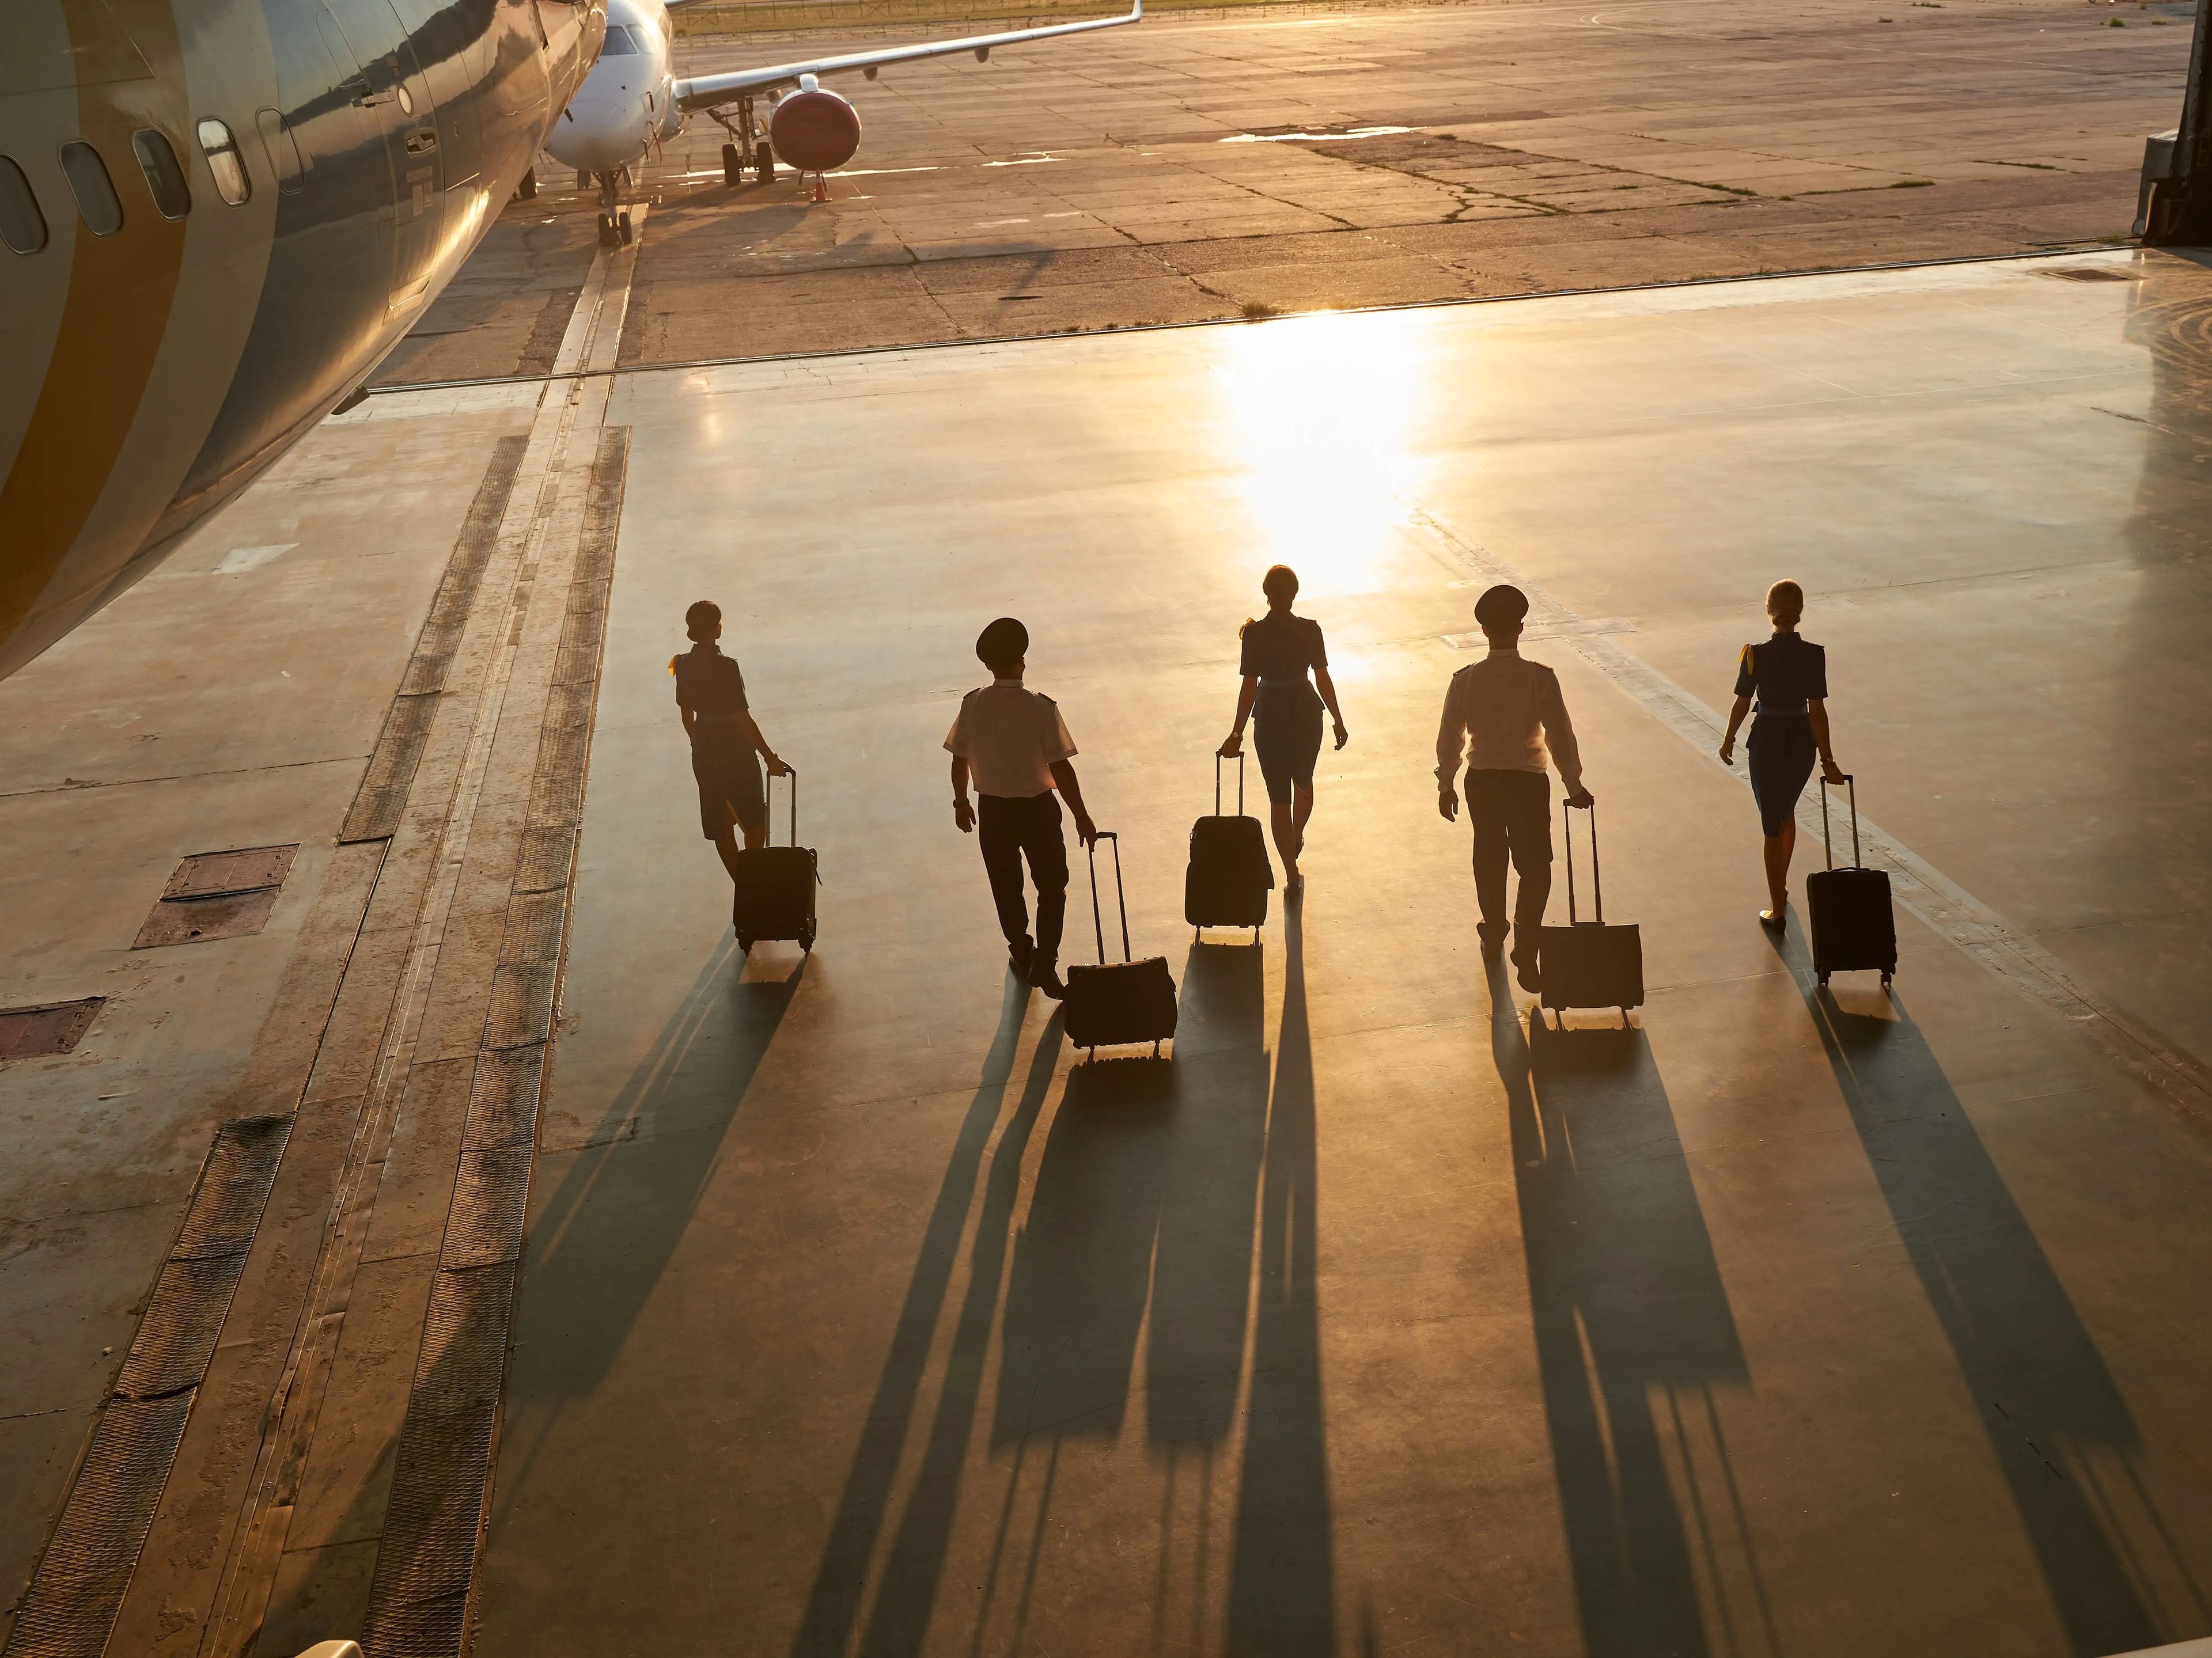 Flight attendants walking on a runway.